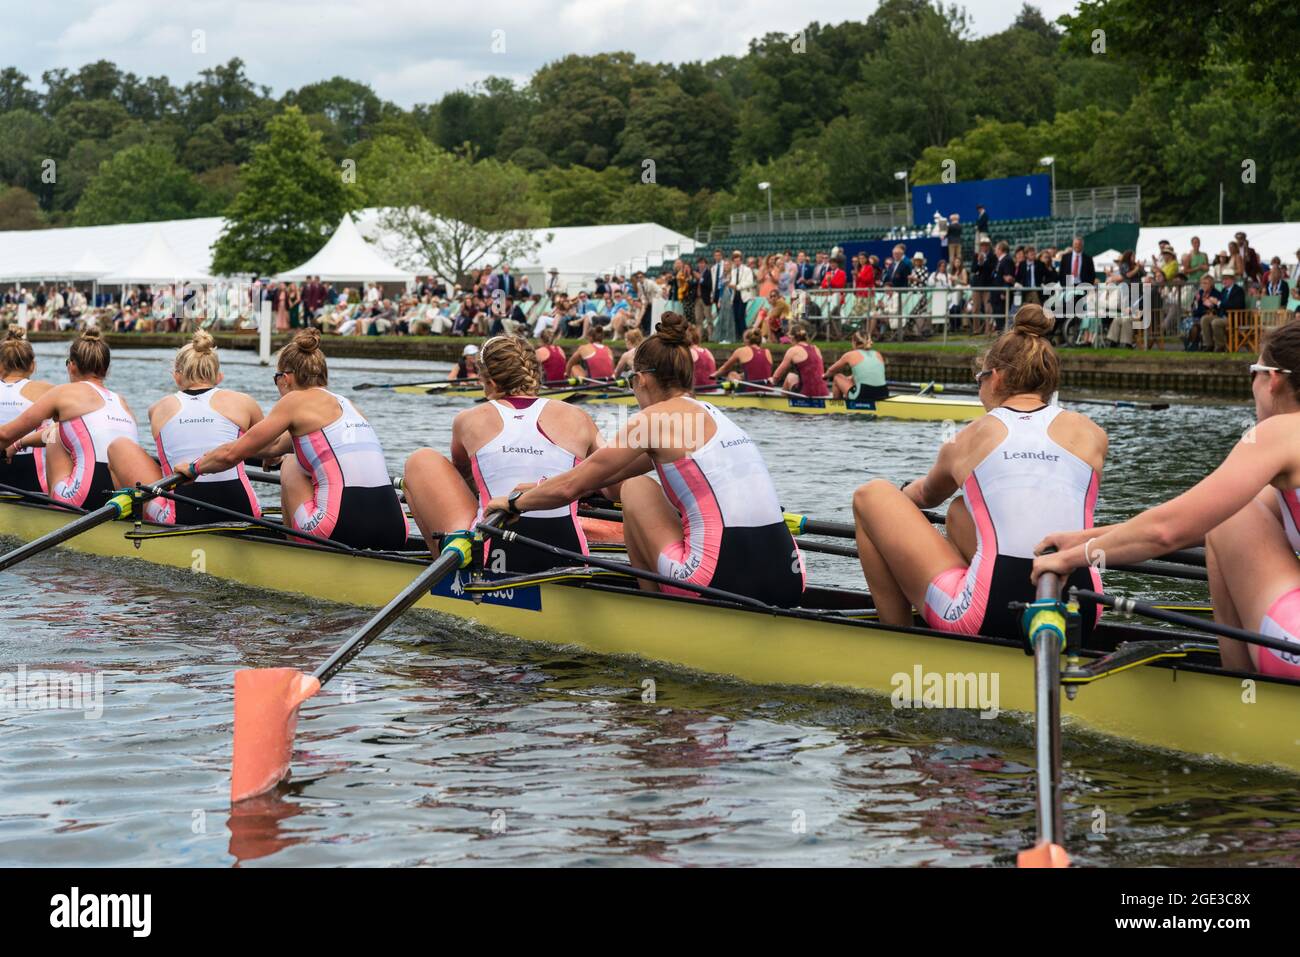 Les huit oars du Leander Club pour femmes avec cox qui remporte la coupe du défi Remenham le dernier jour de la régate royale de Henley (2021) Henley-onThames, Angleterre Banque D'Images